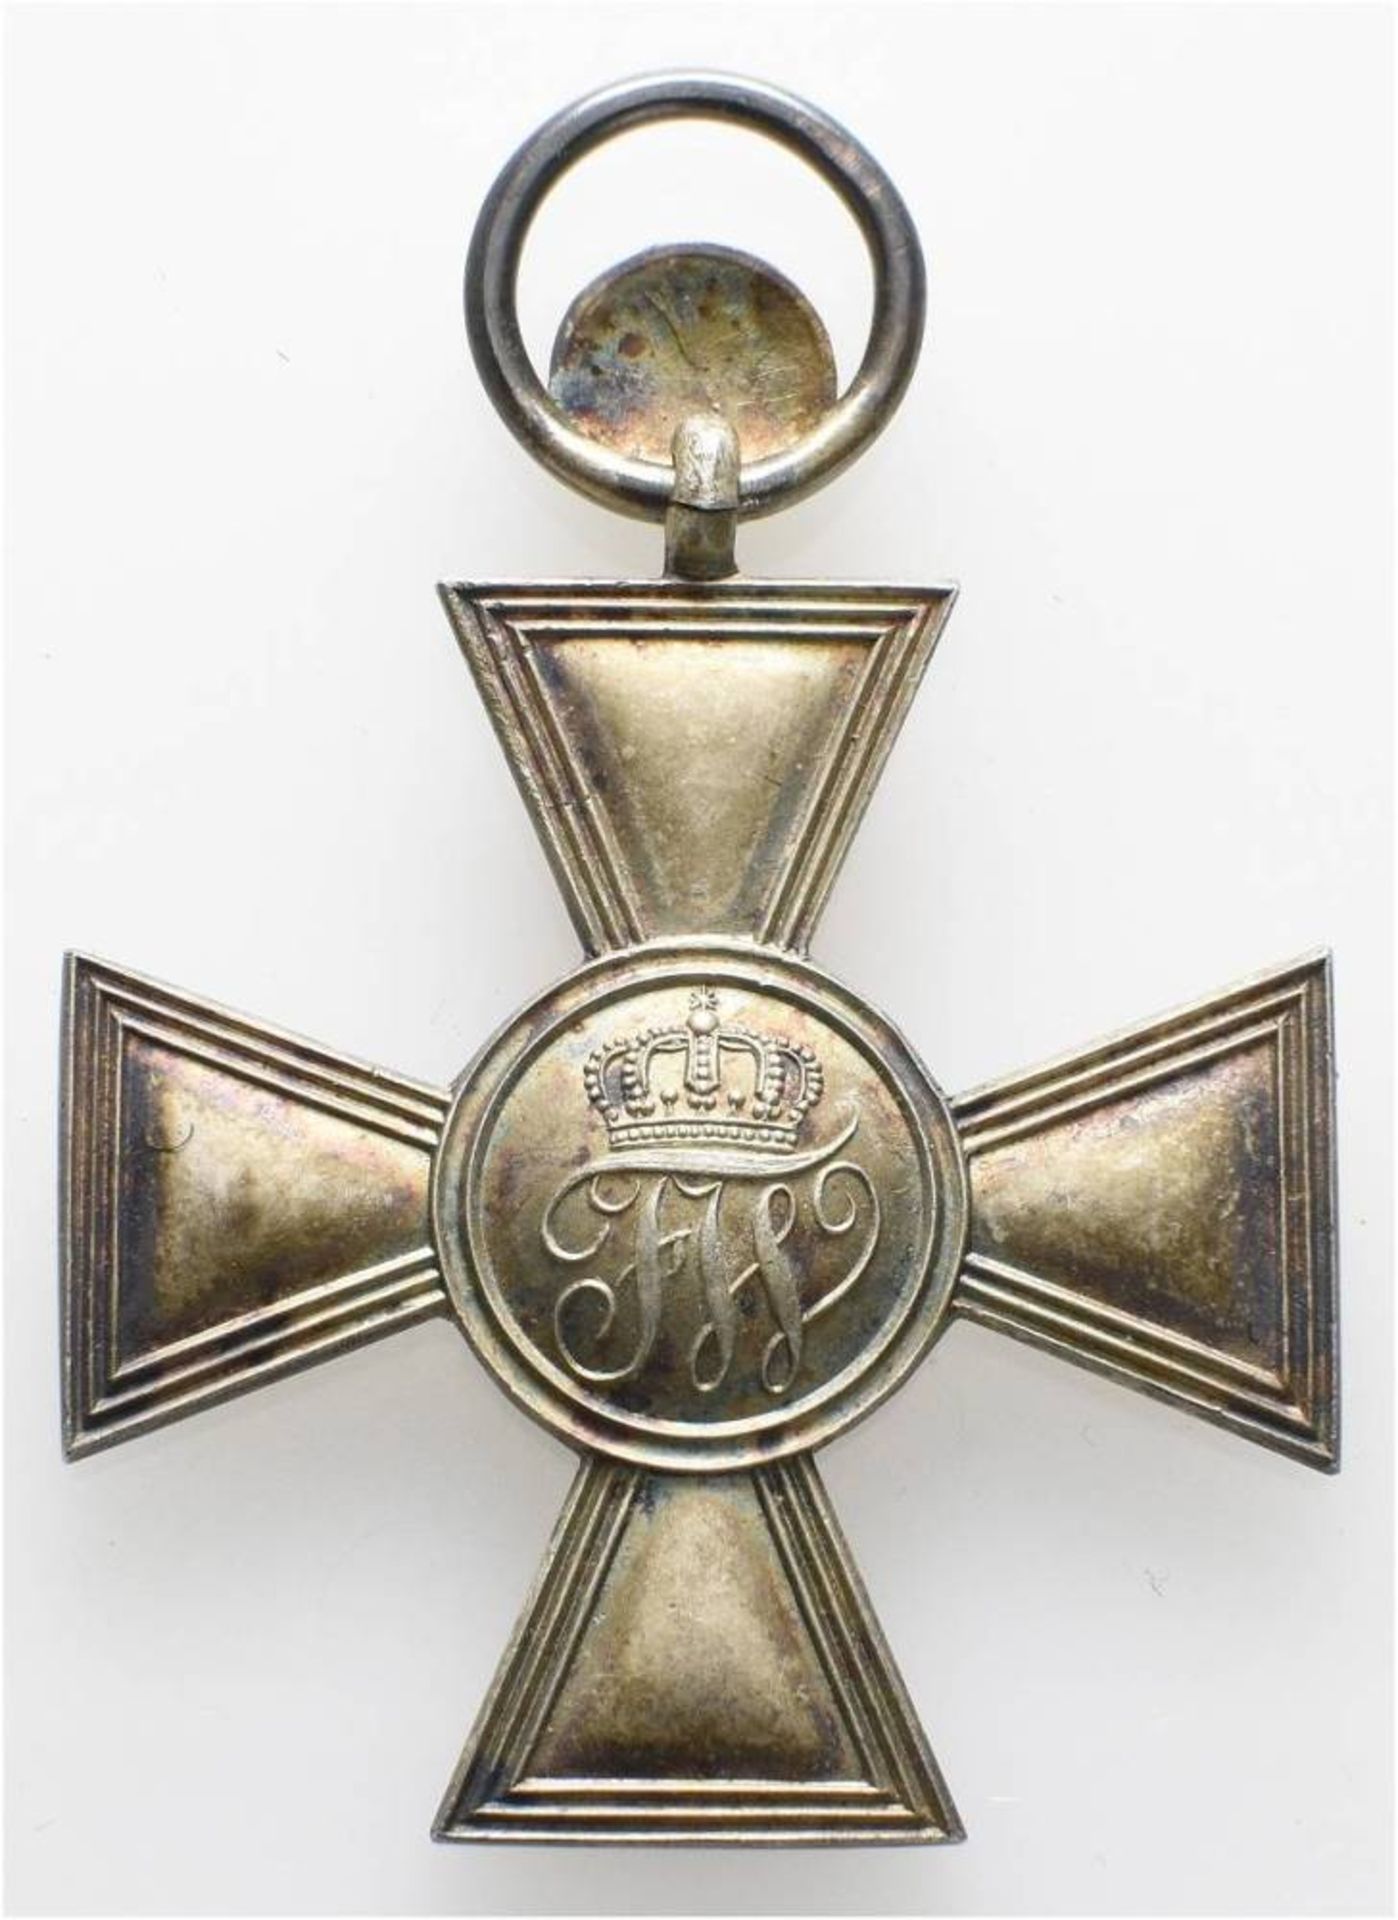 Preußen, Roter Adler Orden, Kreuz 4. Klasse, Silber, glatte Arme, mit Jubiläumszahl 50, OEK 1702, - Bild 4 aus 4